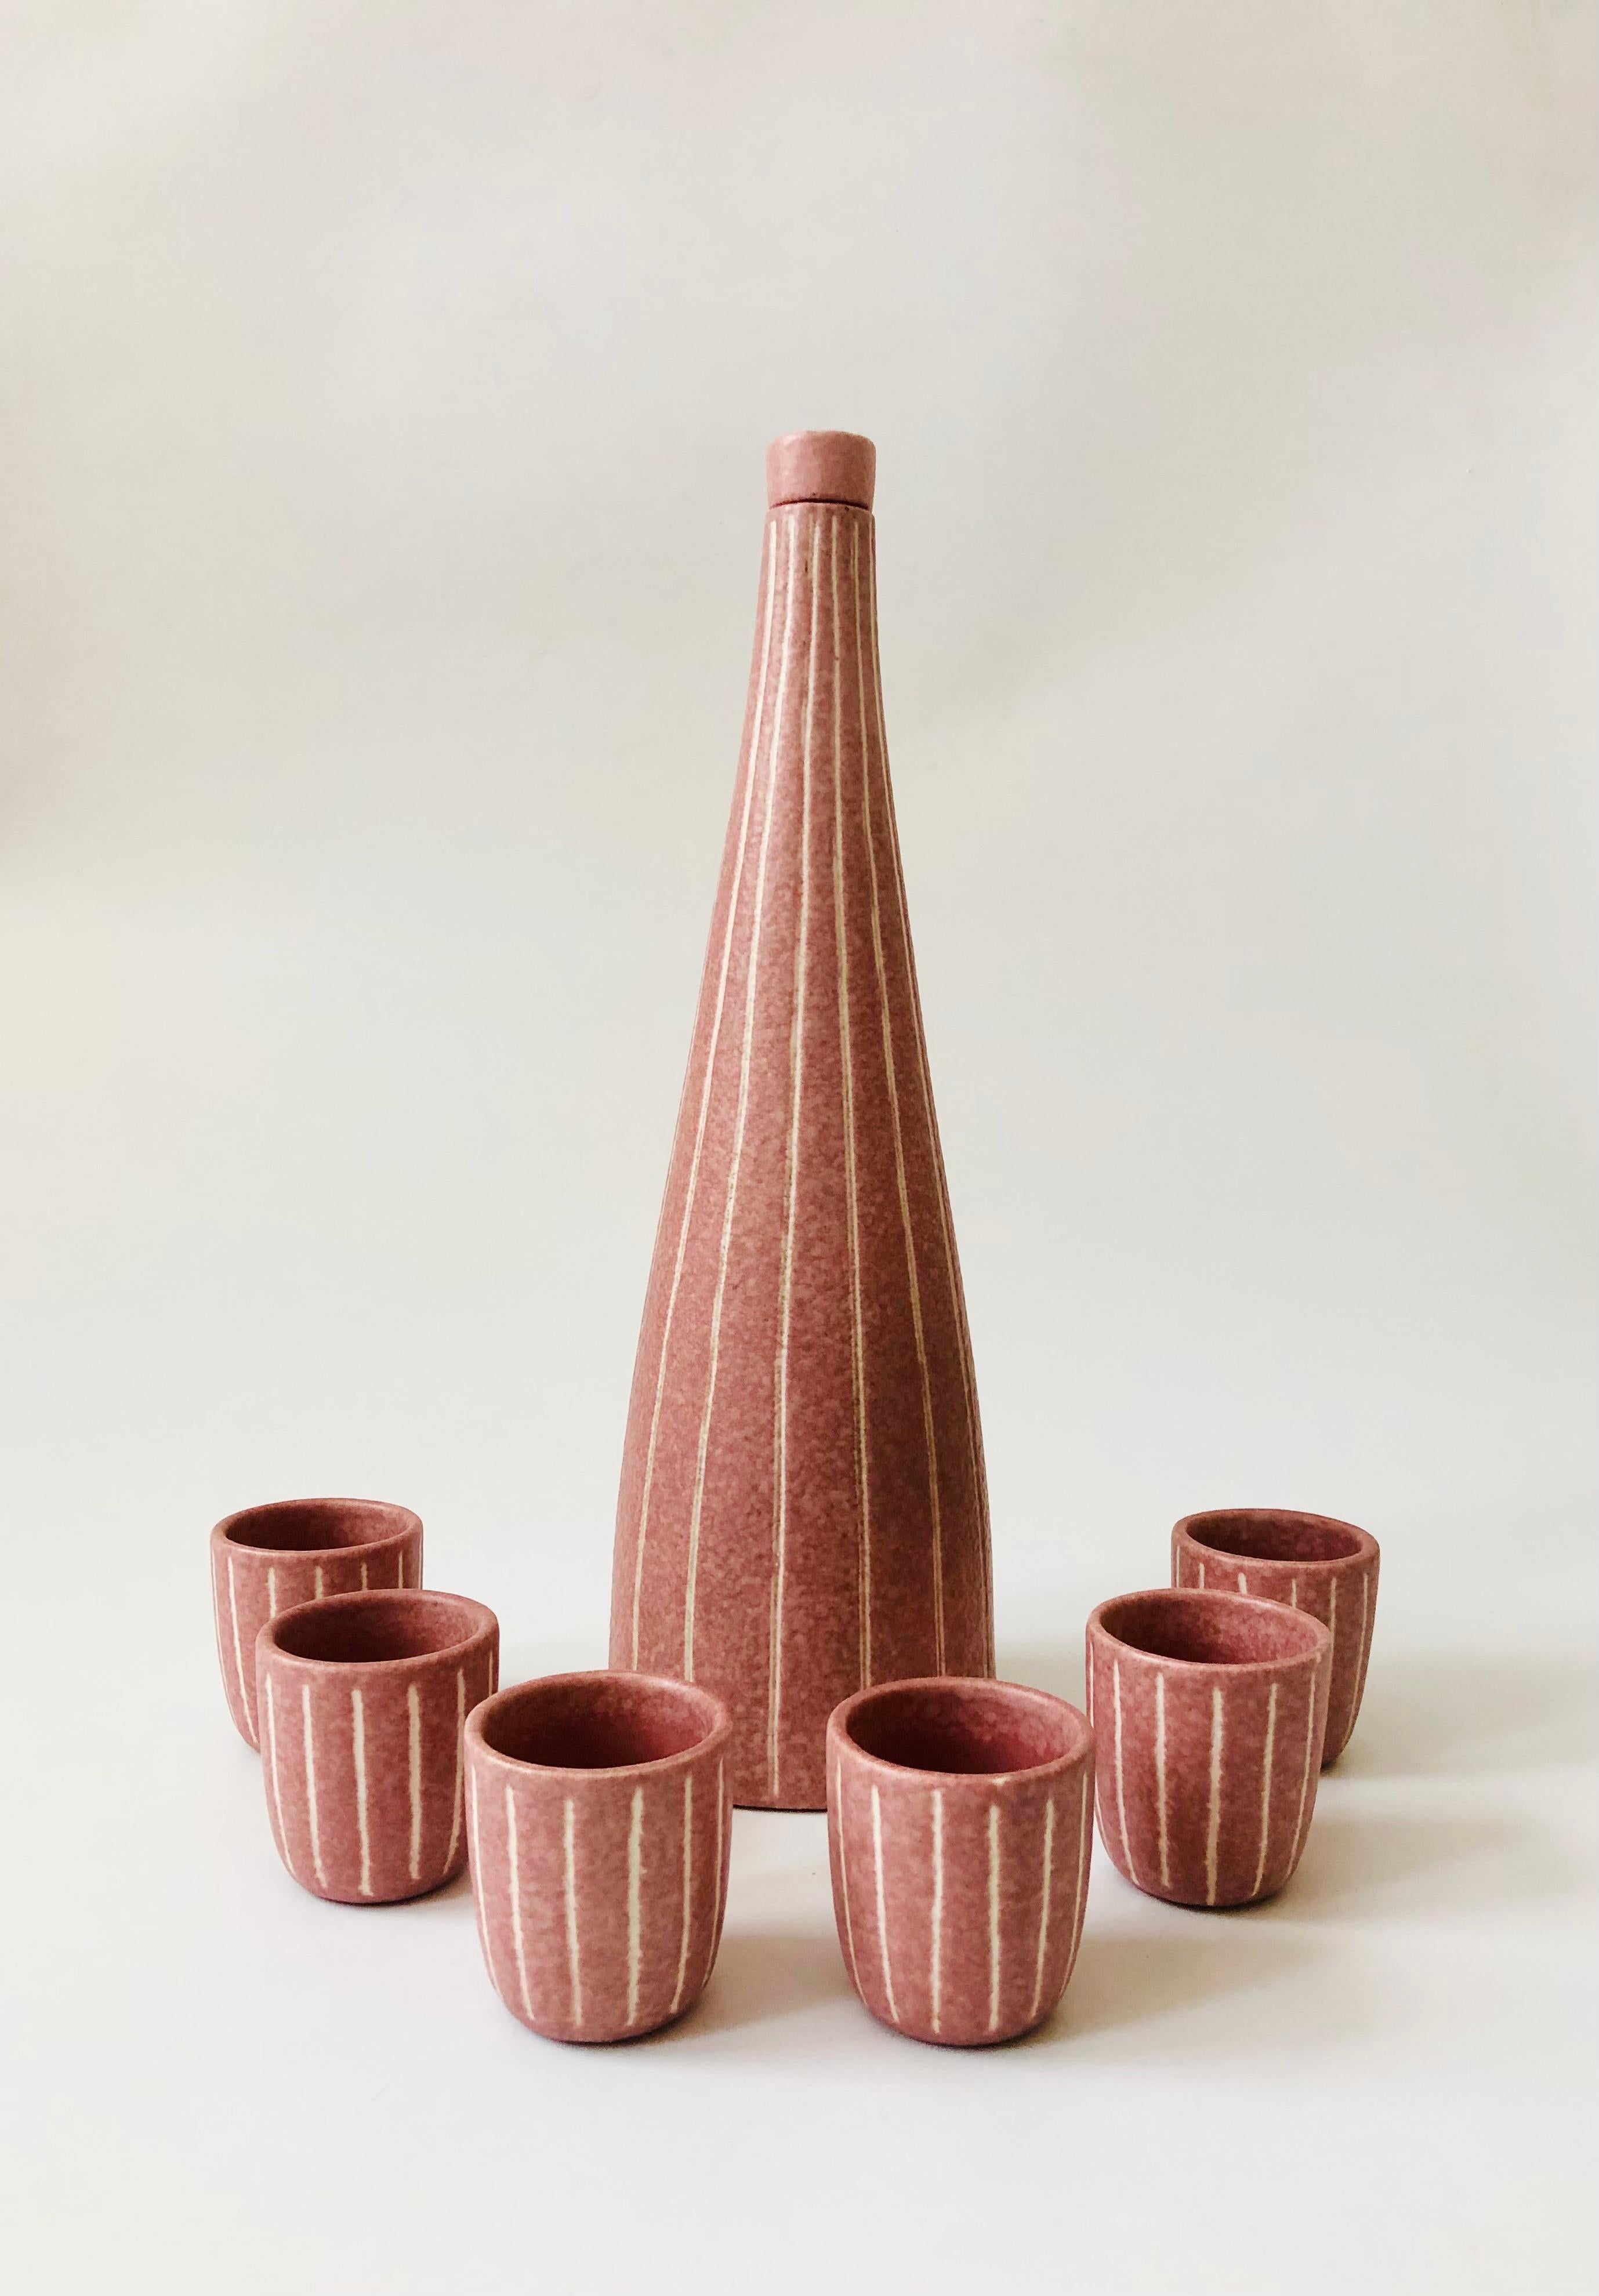 Un rare ensemble de carafes en poterie postmoderne des années 1980 fabriqué par Jaru en Californie. Comprend une grande carafe conique avec bouchon et 6 tasses assorties. Chaque pièce a été décorée de rayures blanches verticales sculptées qui